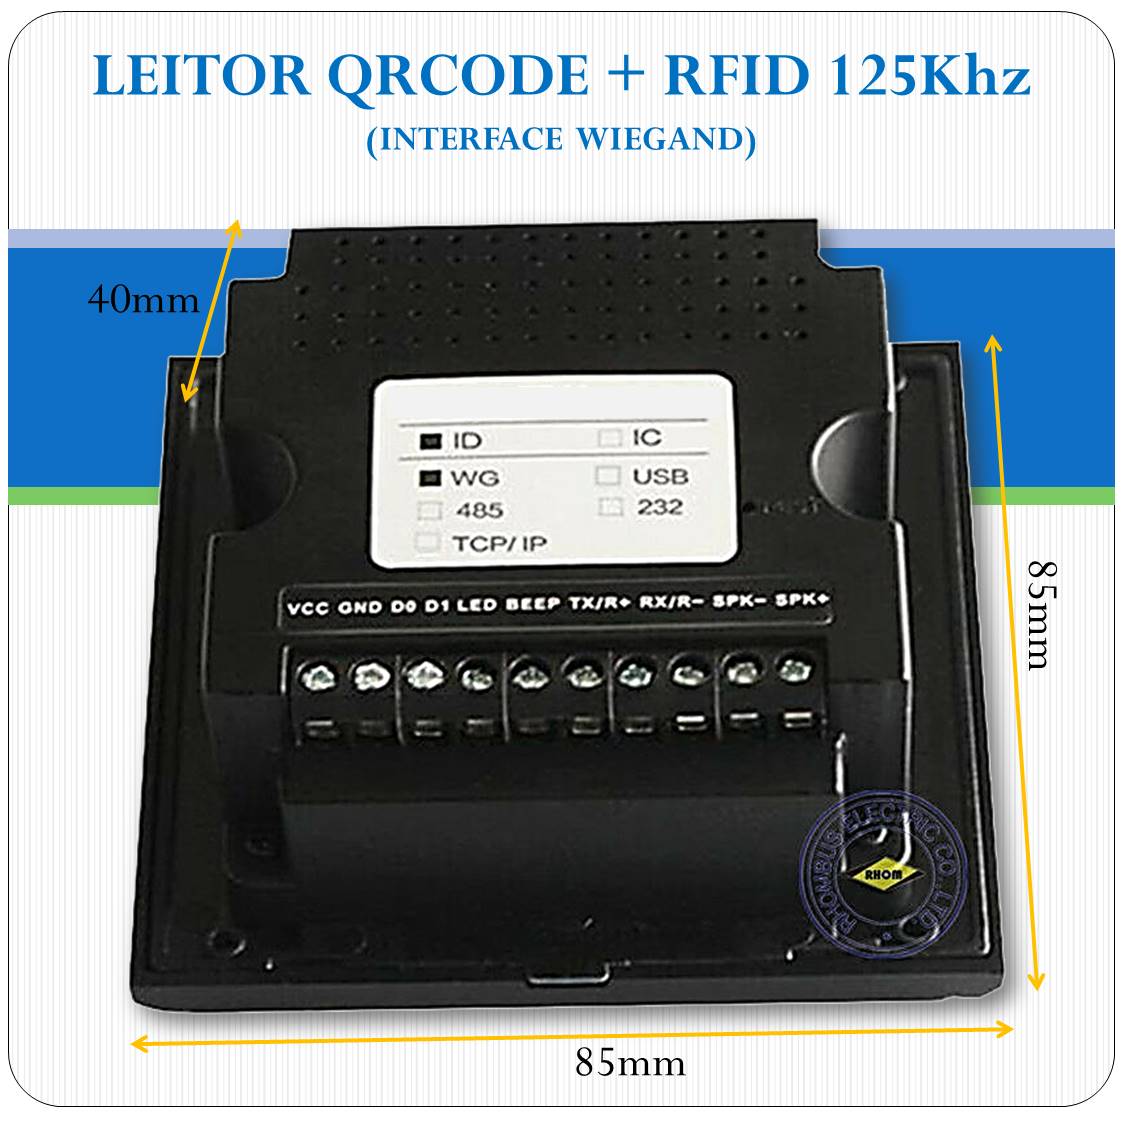 Leitor De Qrcode E Rfid 125khz Integrados - Interface Wieg26